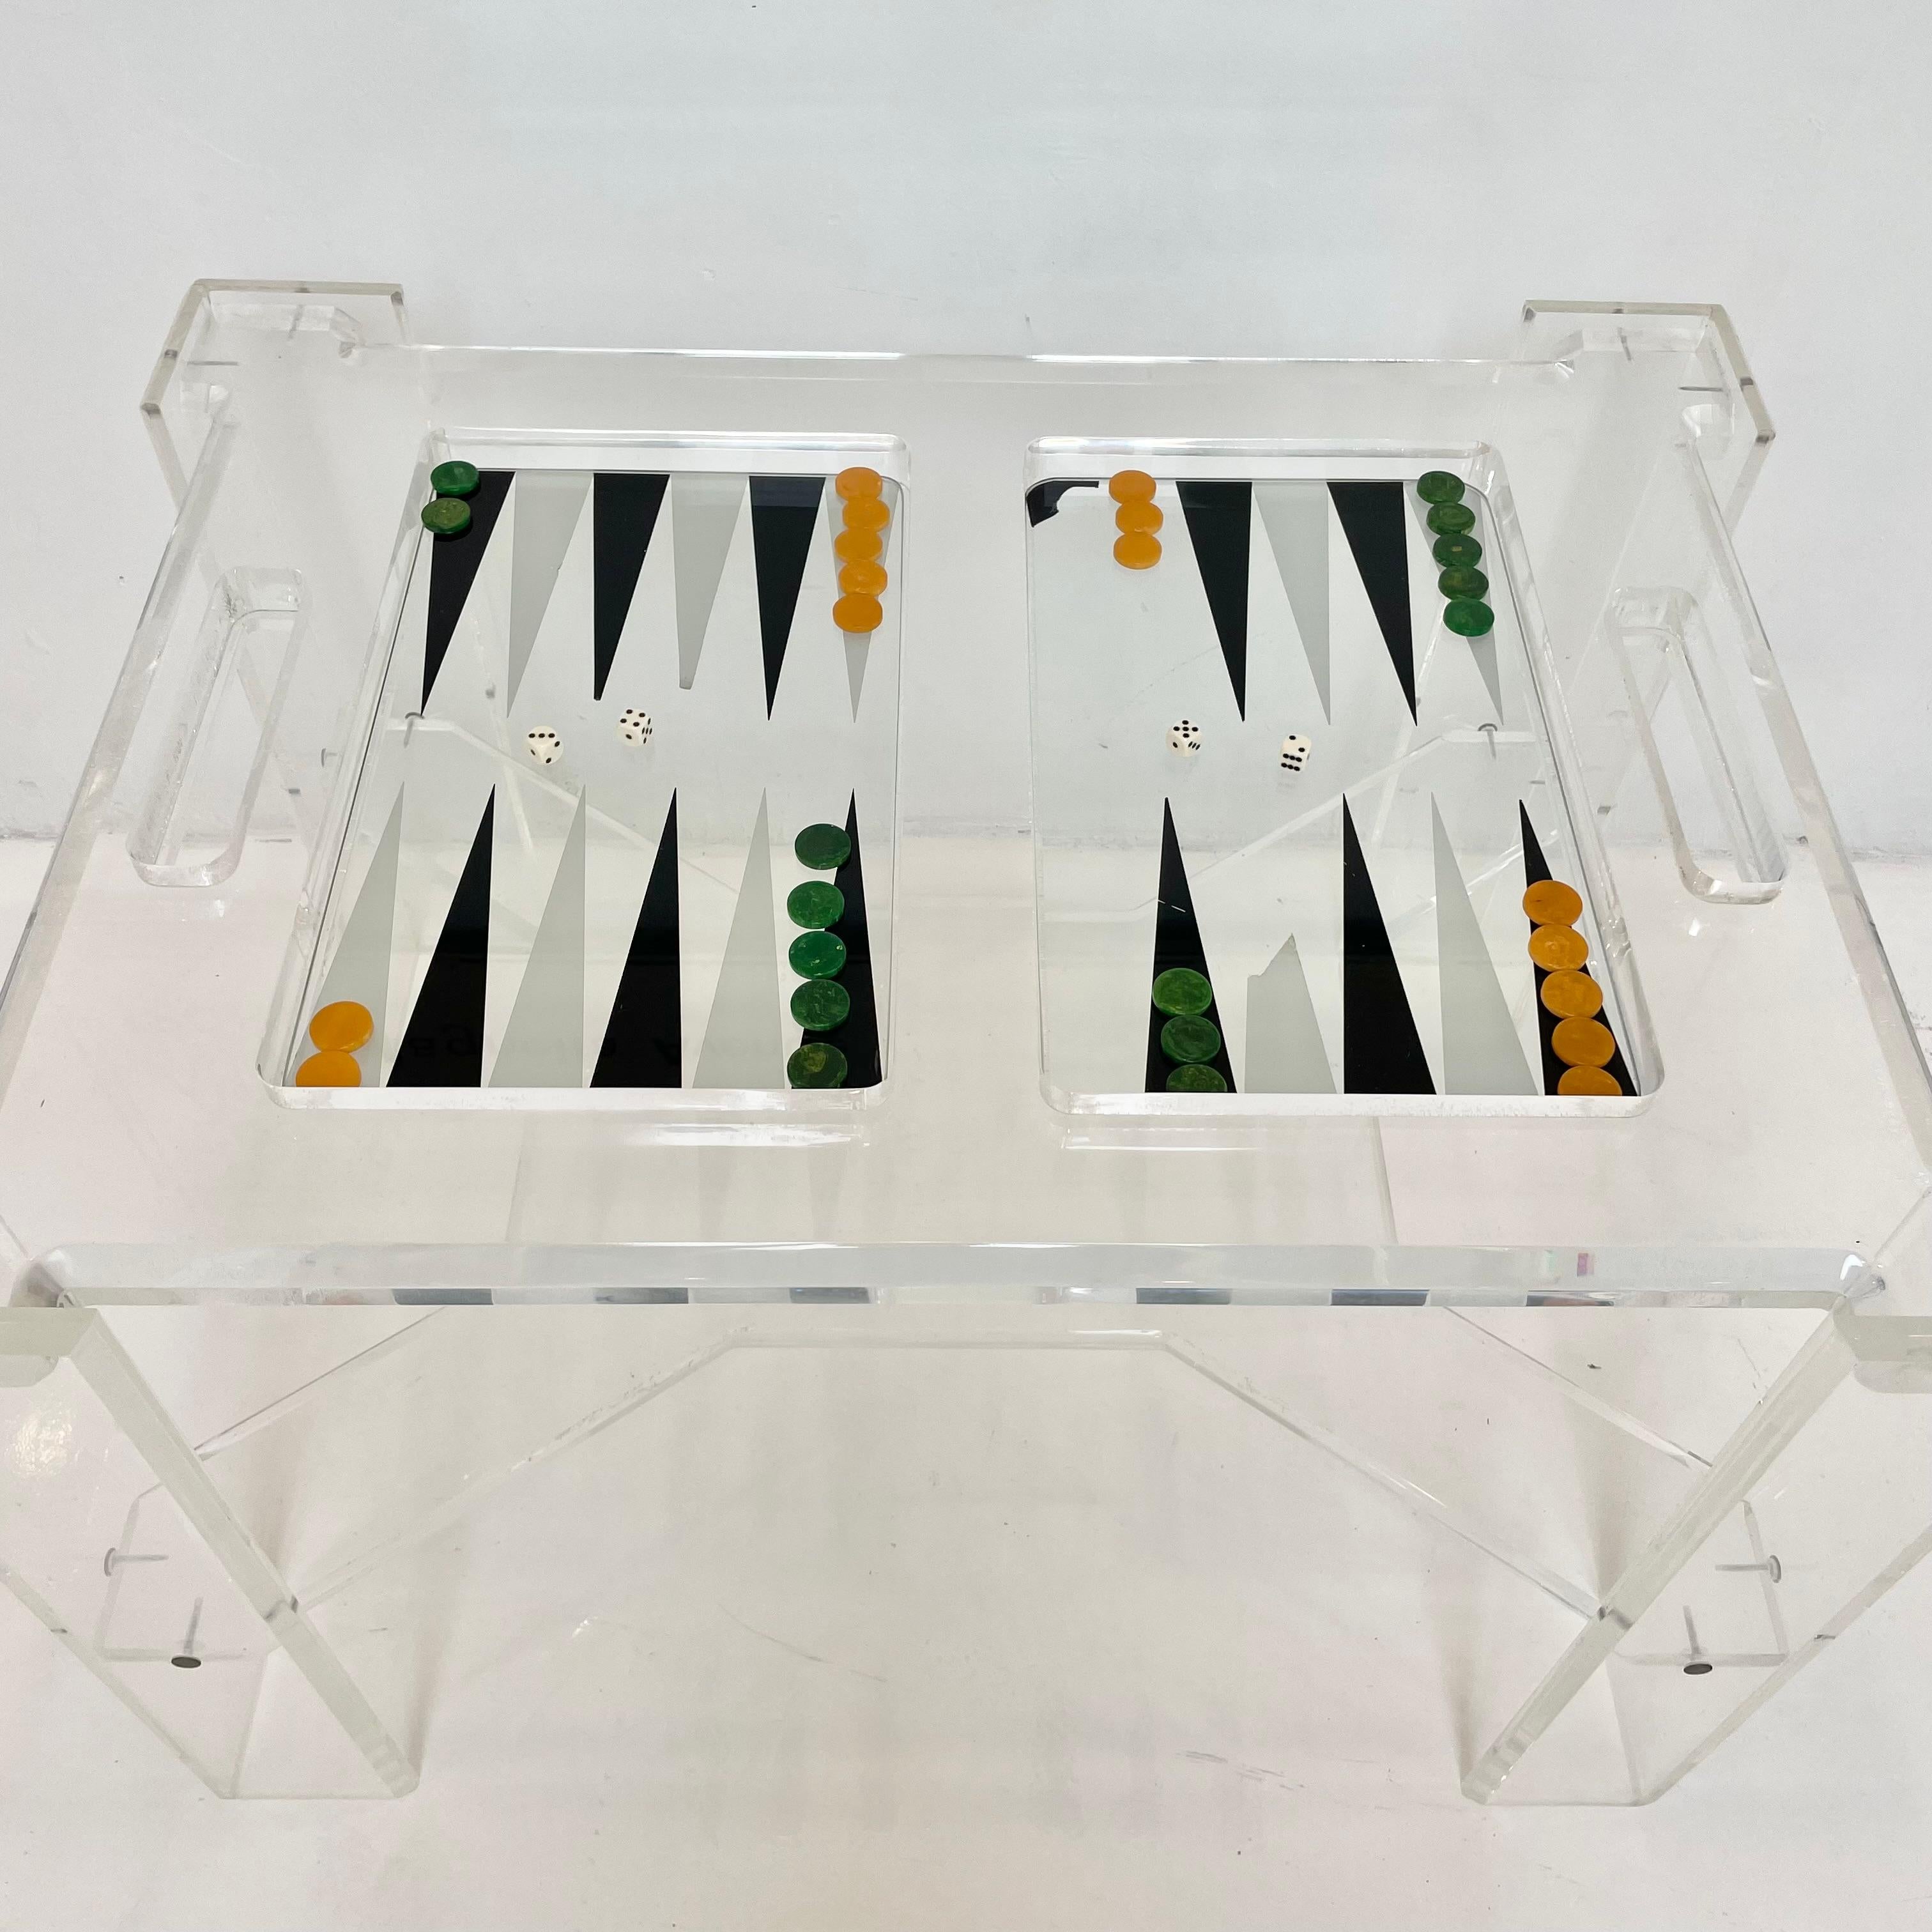 Table de backgammon en Lucite facettée avec plateau en verre amovible. L'ensemble de la table est en Lucite épais et transparent, ce qui confère à cette pièce une grande ouverture et un aspect minimal. Le Condit est en bon état avec quelques rayures